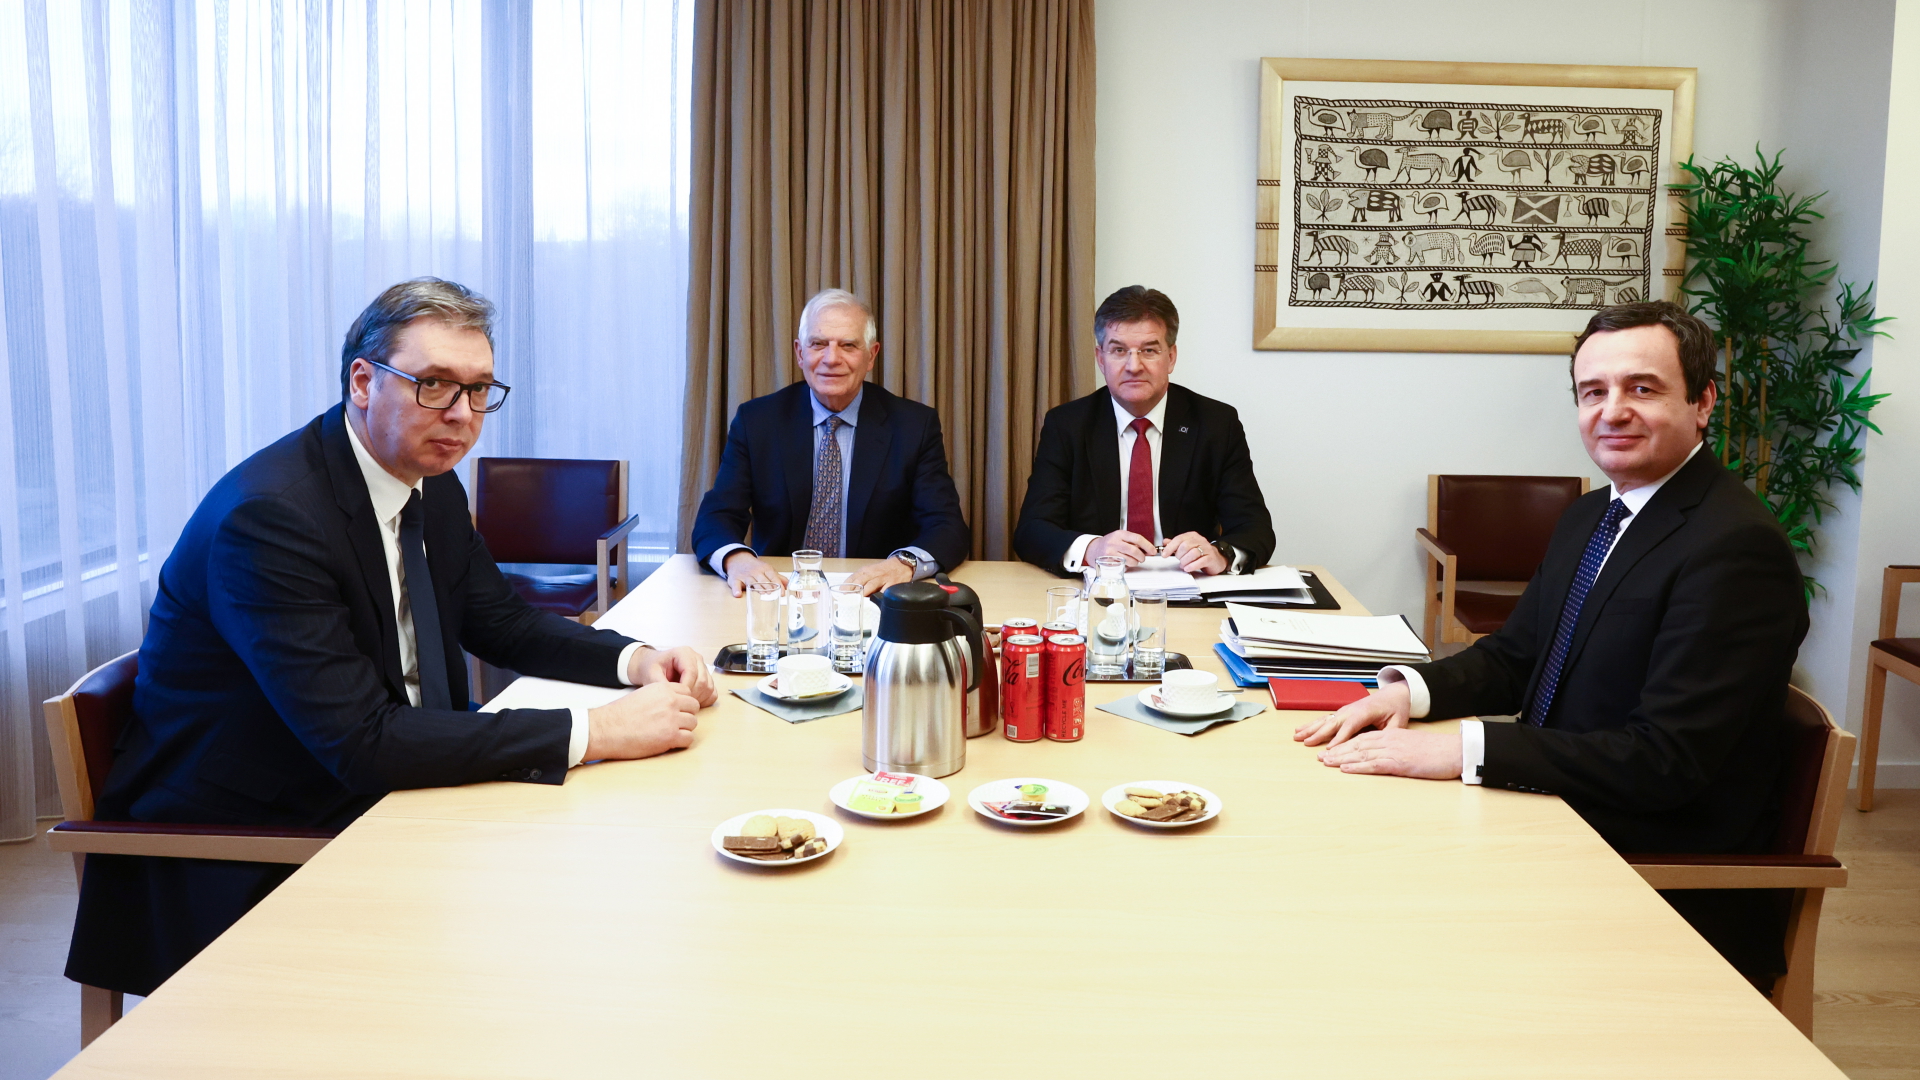 Serbiens Präsident Vucic, Kosovos Premier Kurti, der EU-Außenbeauftragte Borrell und der EU-Sonderbeauftragte Lajcak sitzen bei Vermittlungsgesprächen in Brüssel zusammen. | EPA